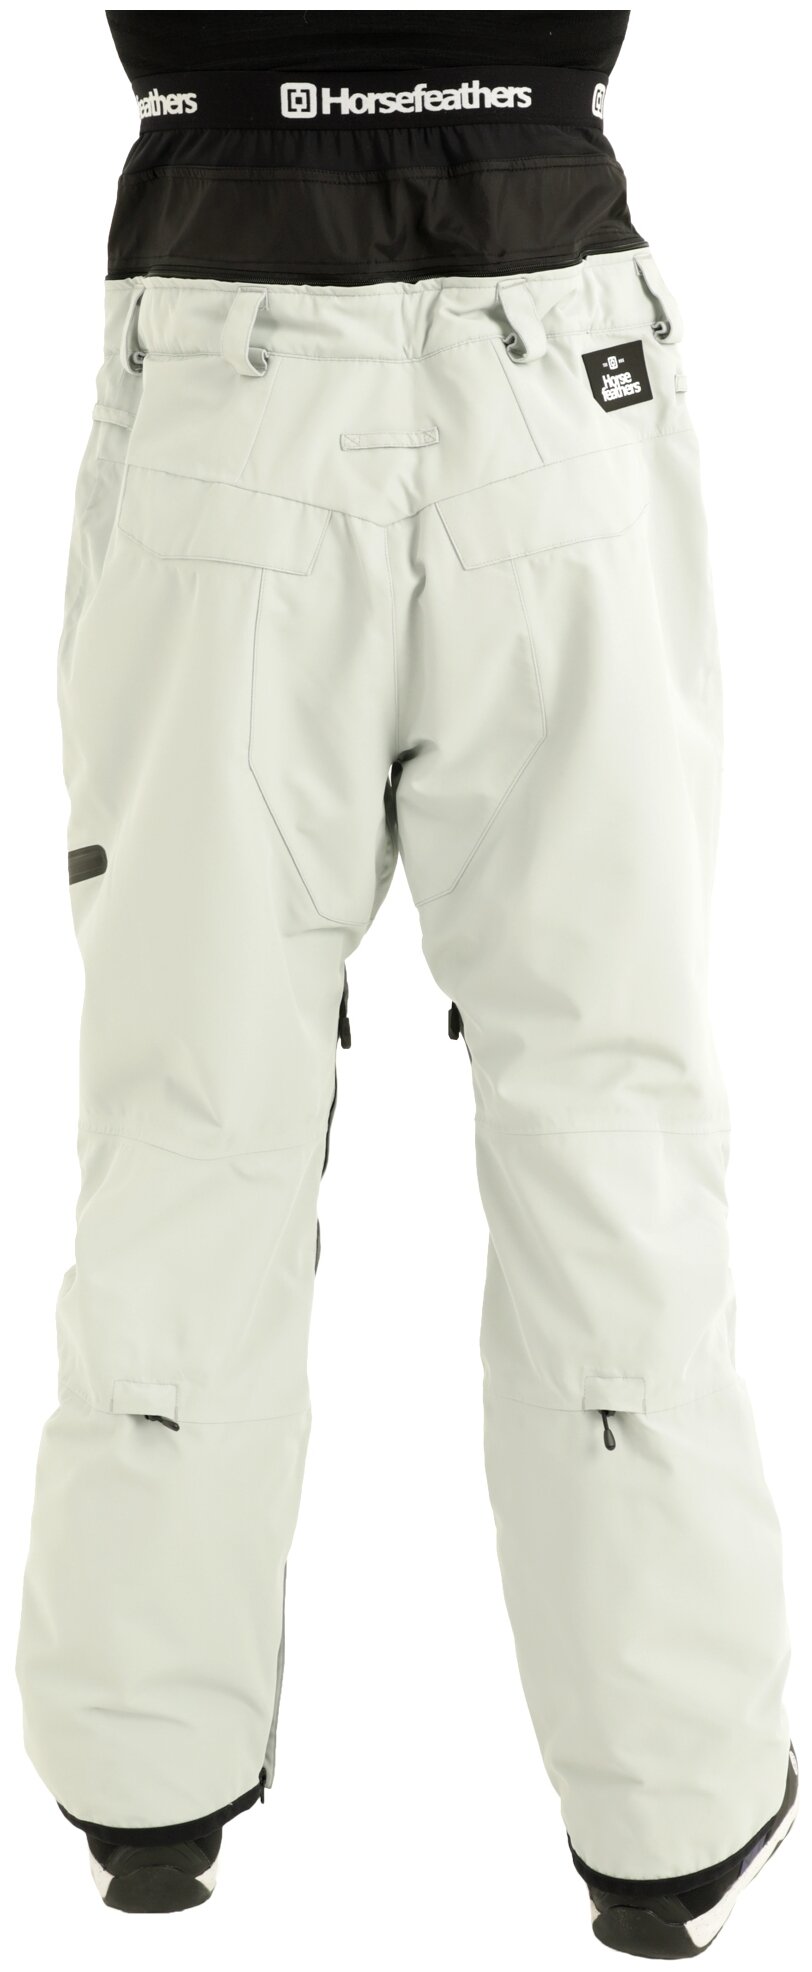 брюки для сноубординга Horsefeathers, подкладка, карманы, мембрана, регулировка объема талии, водонепроницаемые